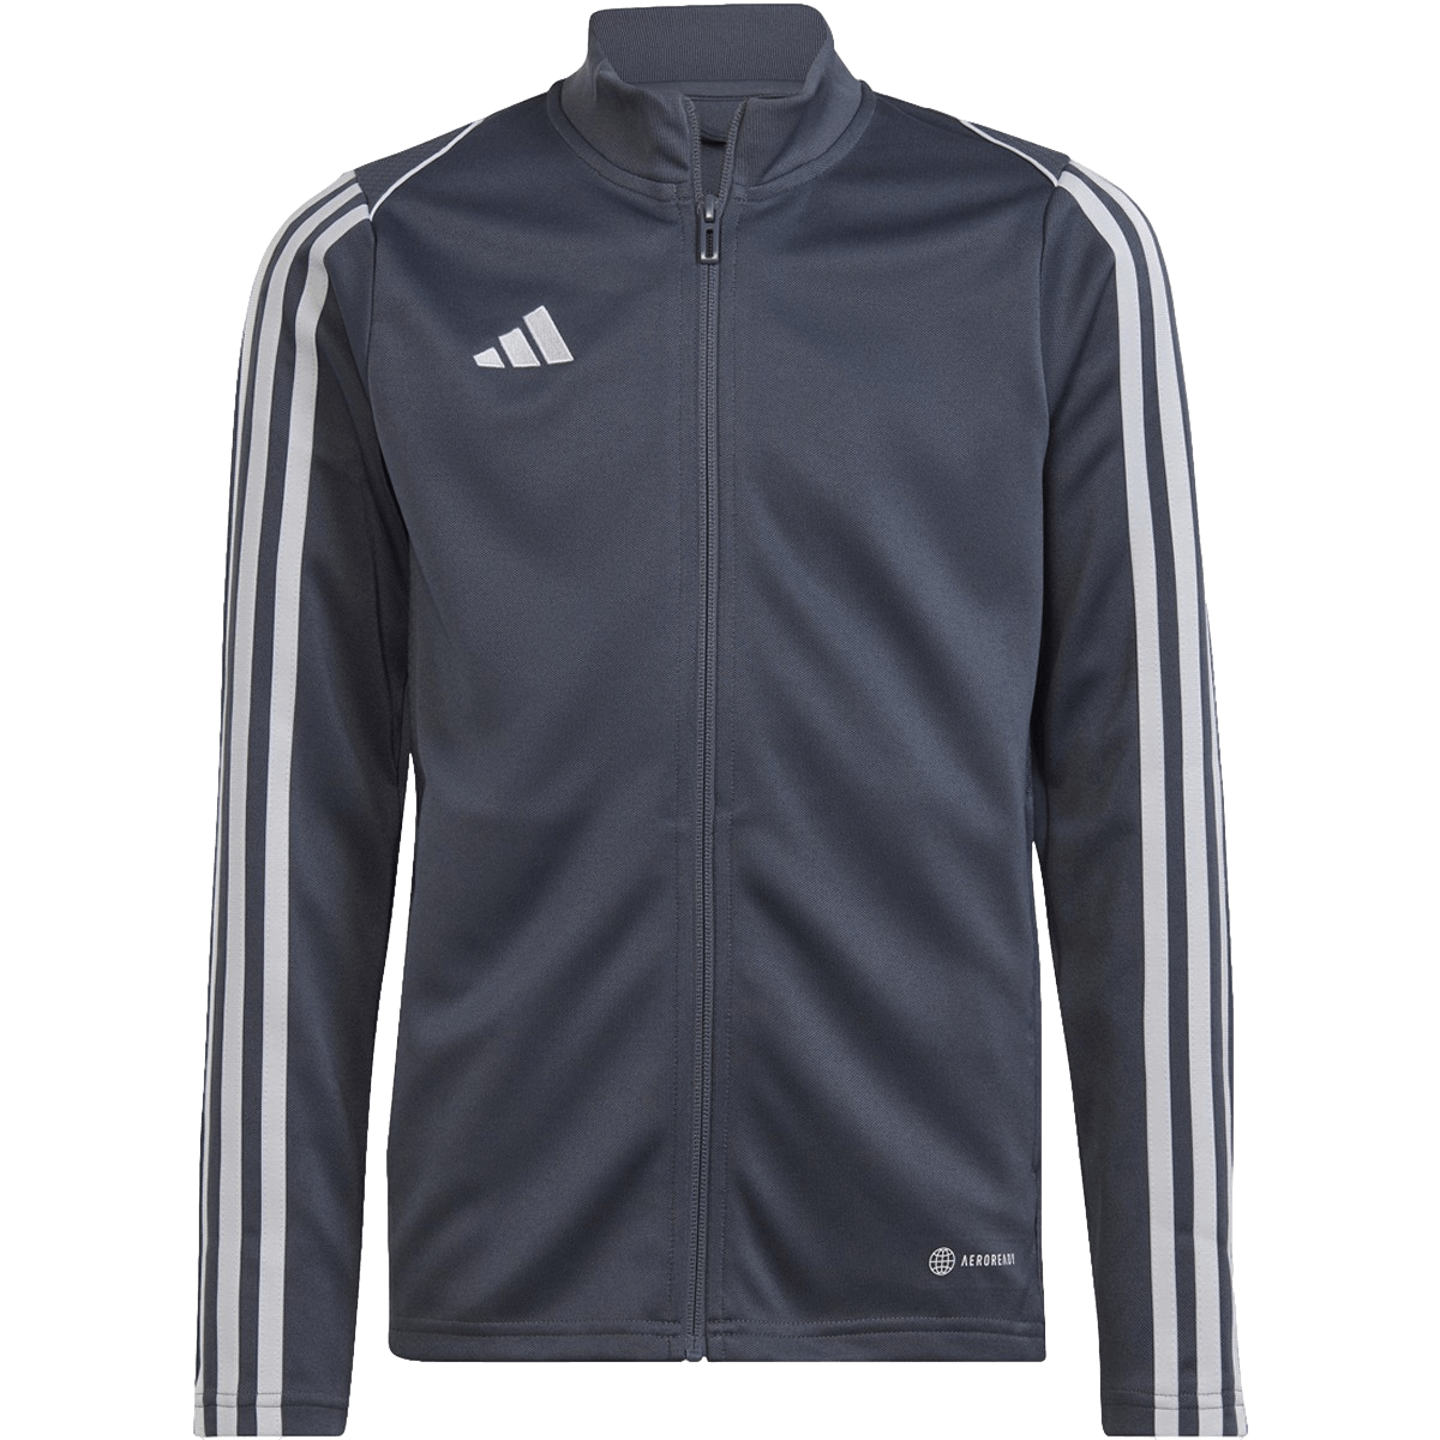 Adidas Tiro 23 League Youth Training Jacket